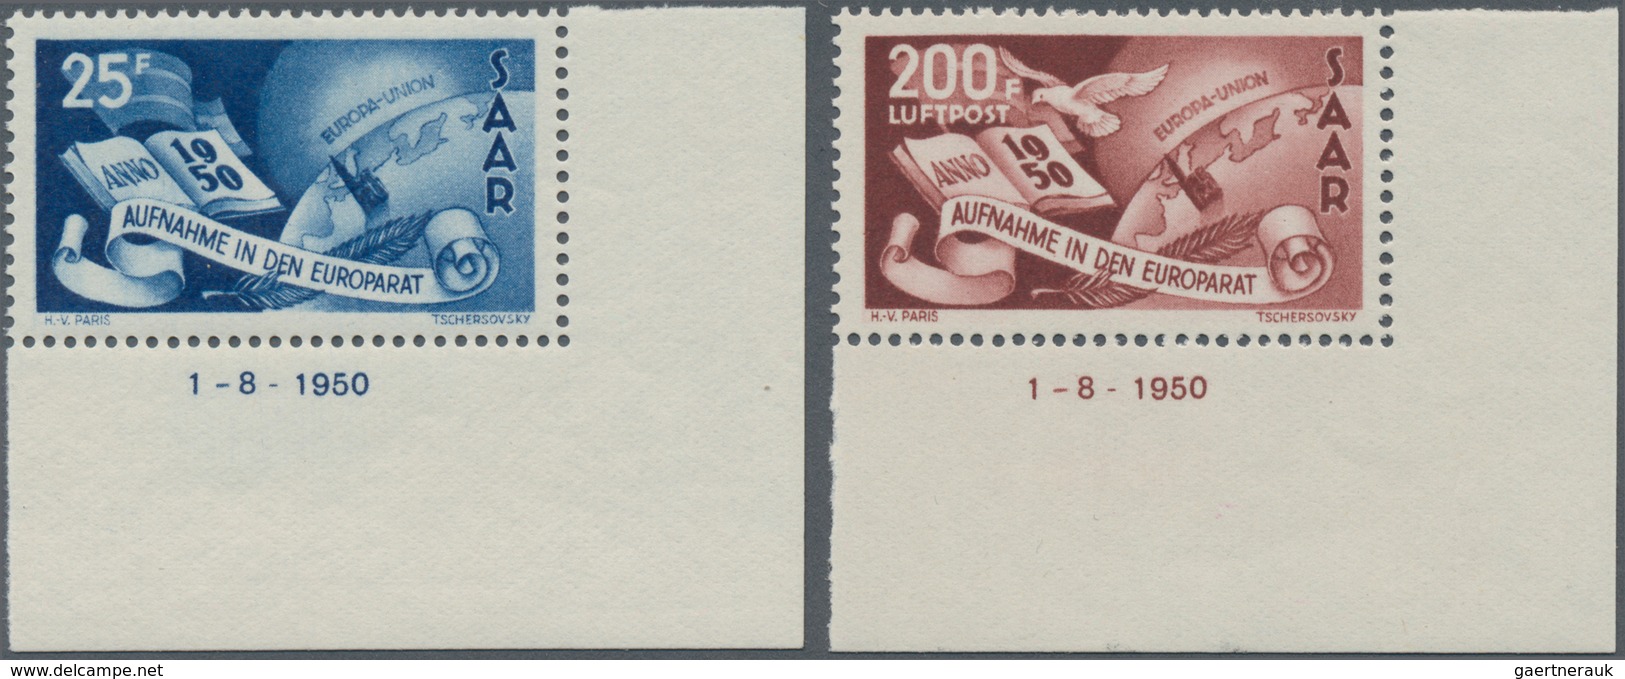 Saarland (1947/56): 1950, Aufnahme Des Saarlandes In Den Europarat, Postfrischer Luxus-Eckrandsatz A - Brieven En Documenten